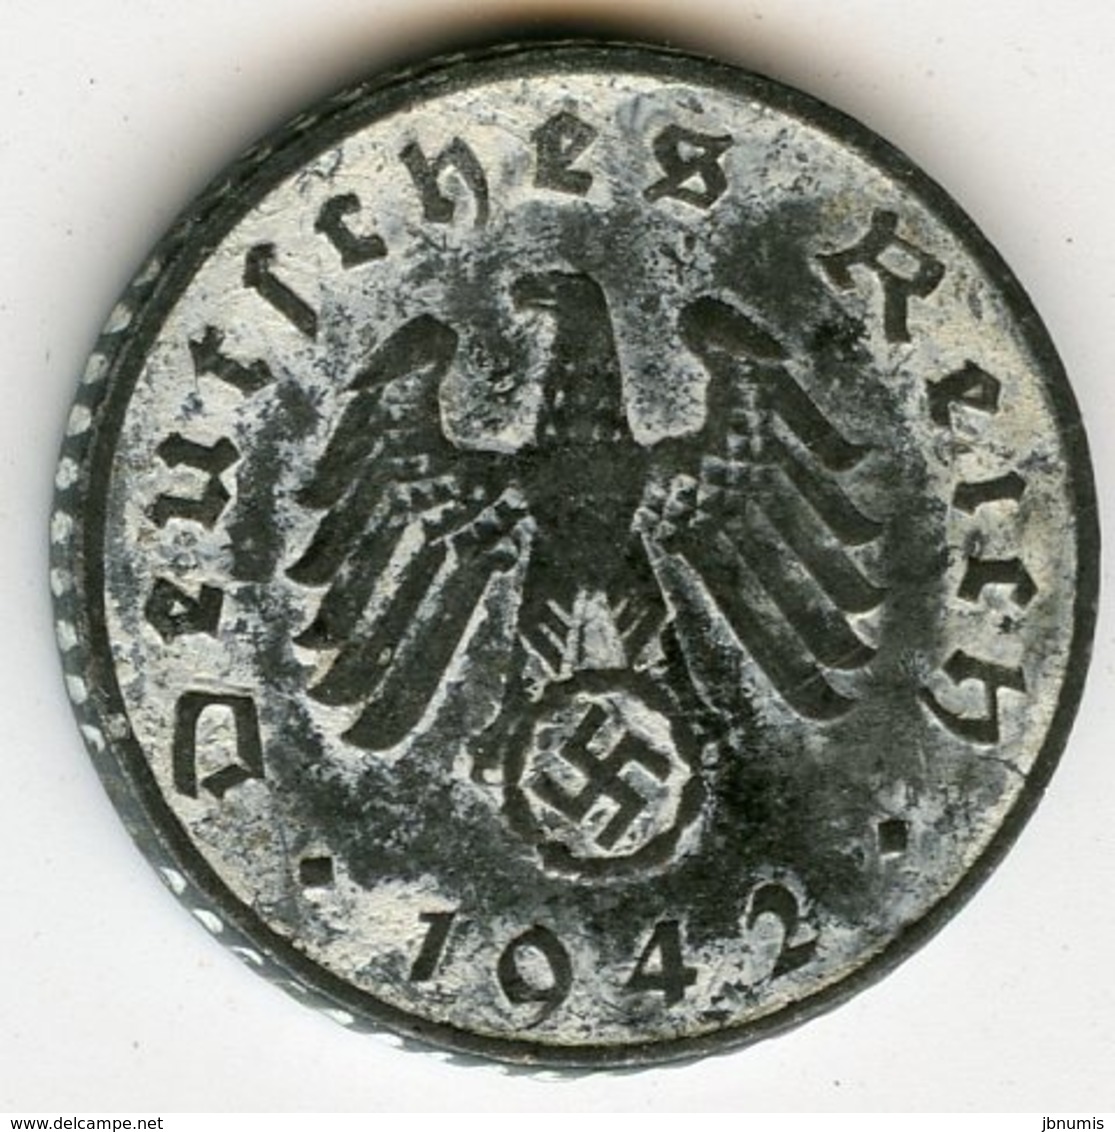 Allemagne Germany 5 Reichspfennig 1942 G J 370 KM 100 - 5 Reichspfennig